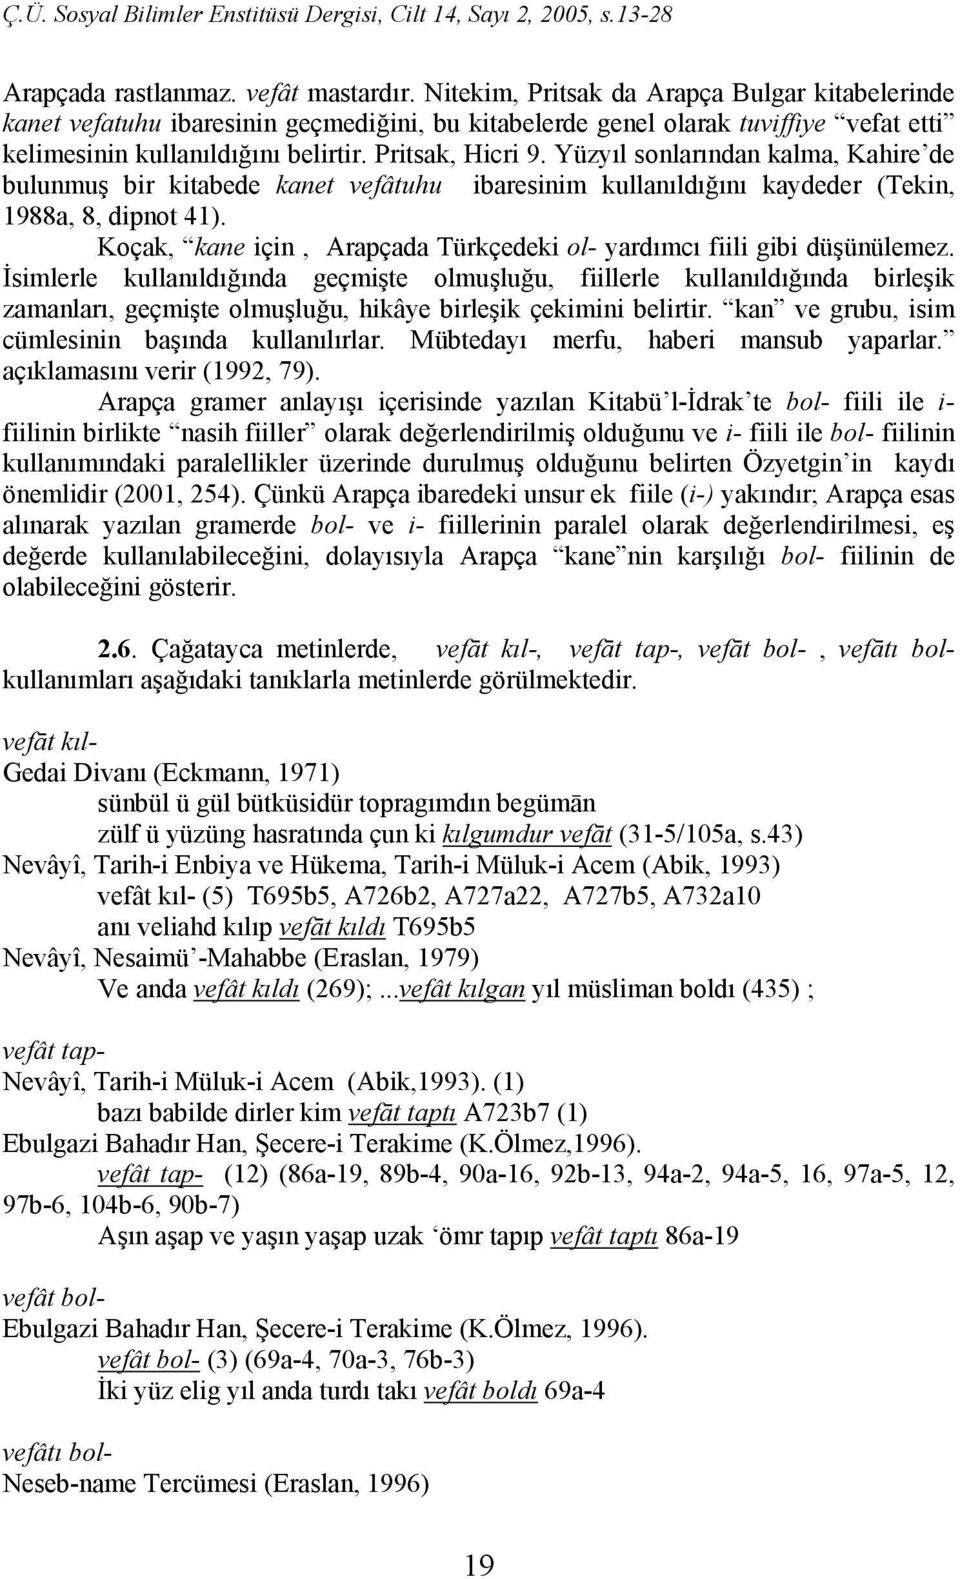 Yüzyıl sonlarından kalma, Kahire de bulunmuş bir kitabede kanet vefâtuhu ibaresinim kullanıldığını kaydeder (Tekin, 1988a, 8, dipnot 41).